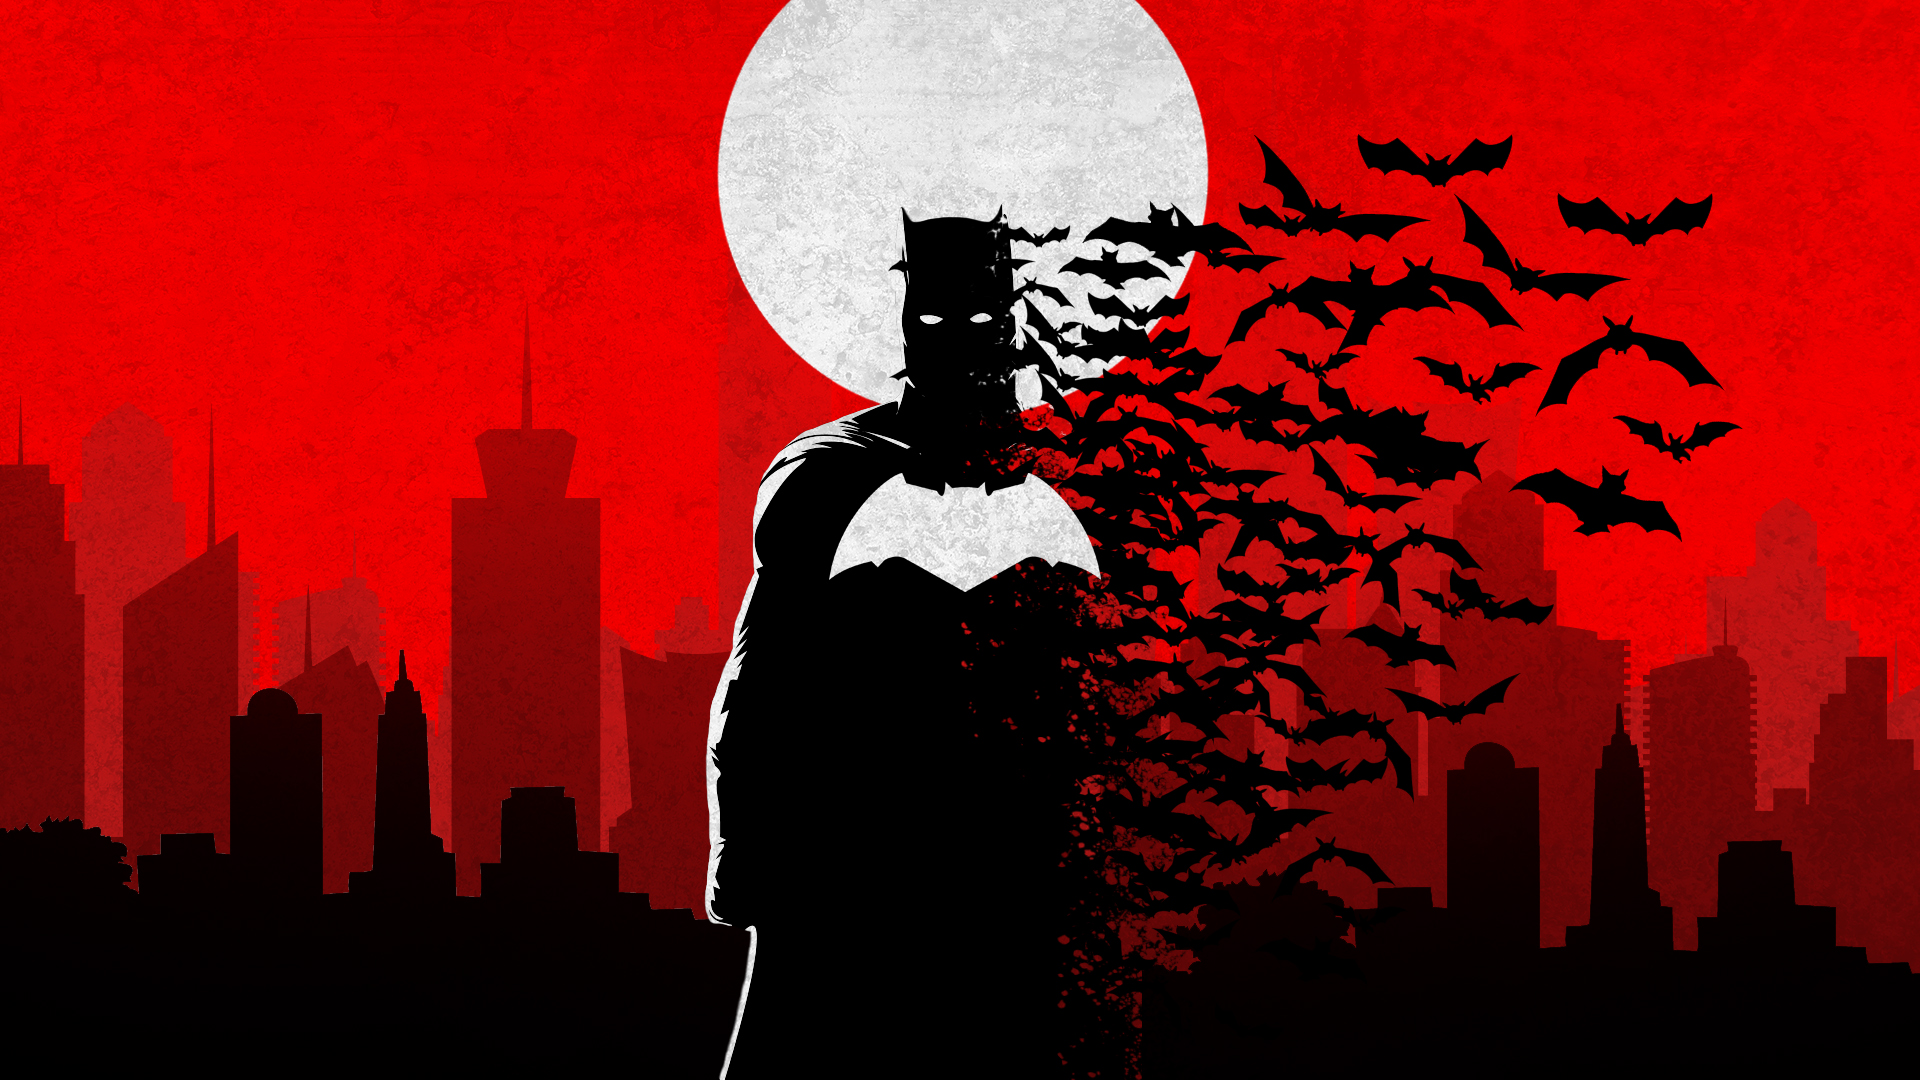 Batman with Bats & Moon Comics Wallpapers - Batman Wallpapers